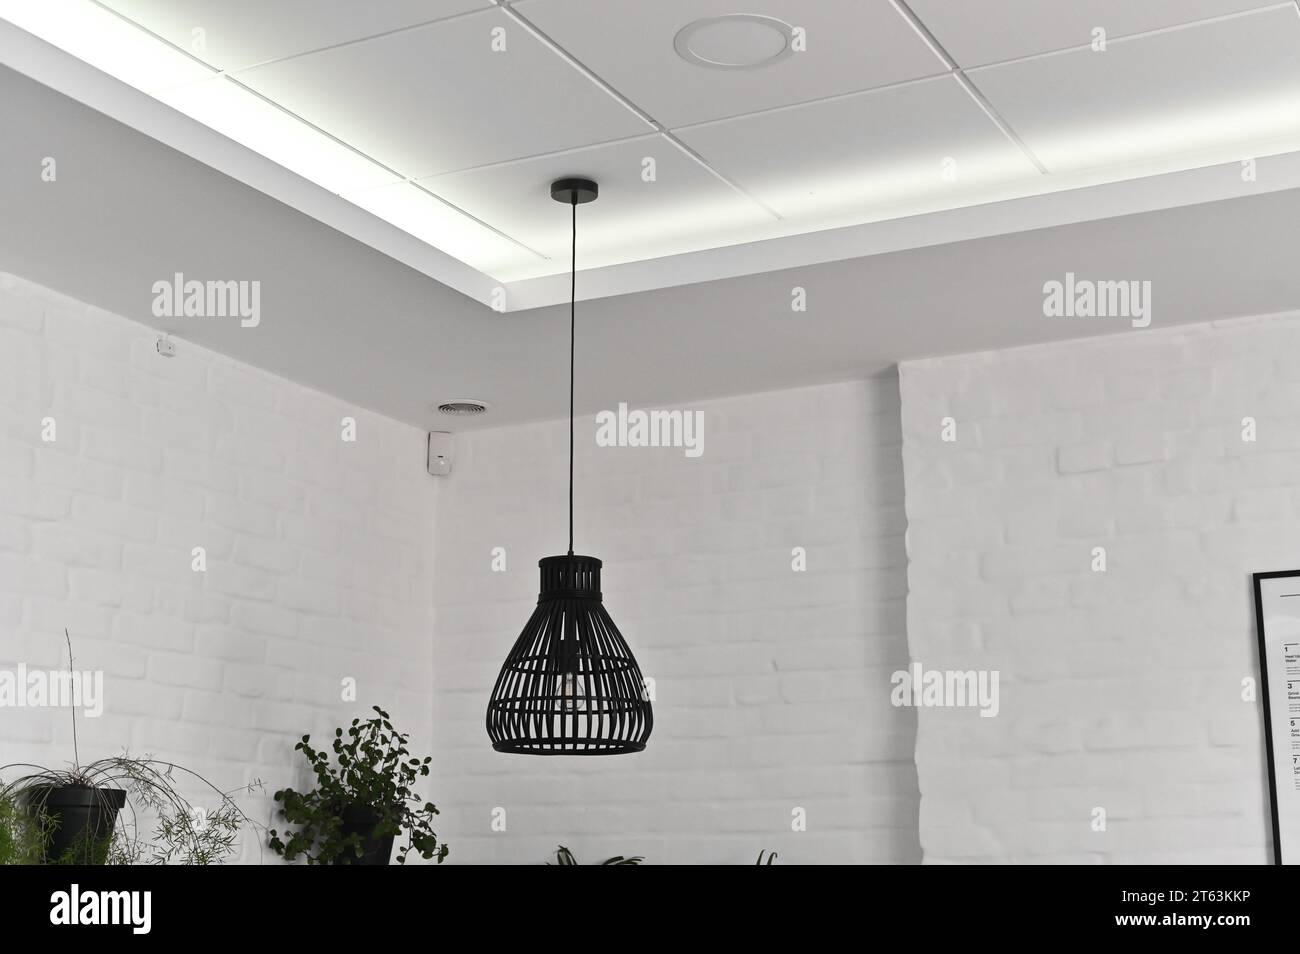 Lampen auf langen Kabeln vor der Tür in einem hellen Innenraum, Elemente der Beleuchtung und der Inneneinrichtung. Stockfoto